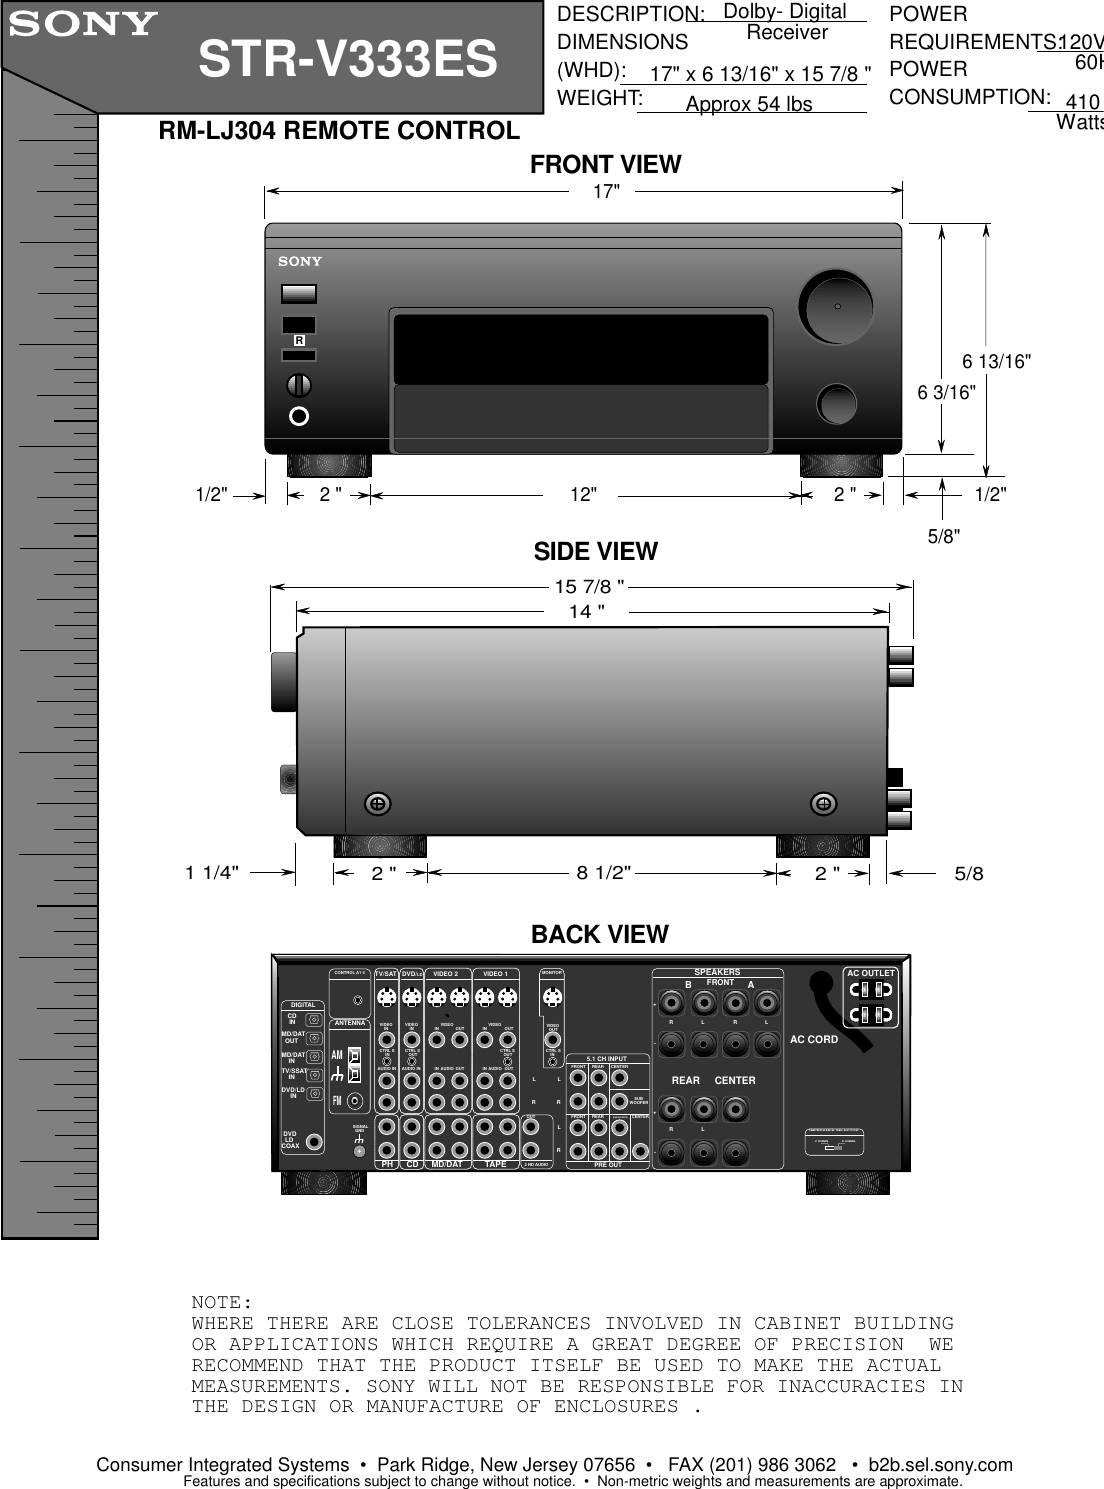 Sony STR-V333ES